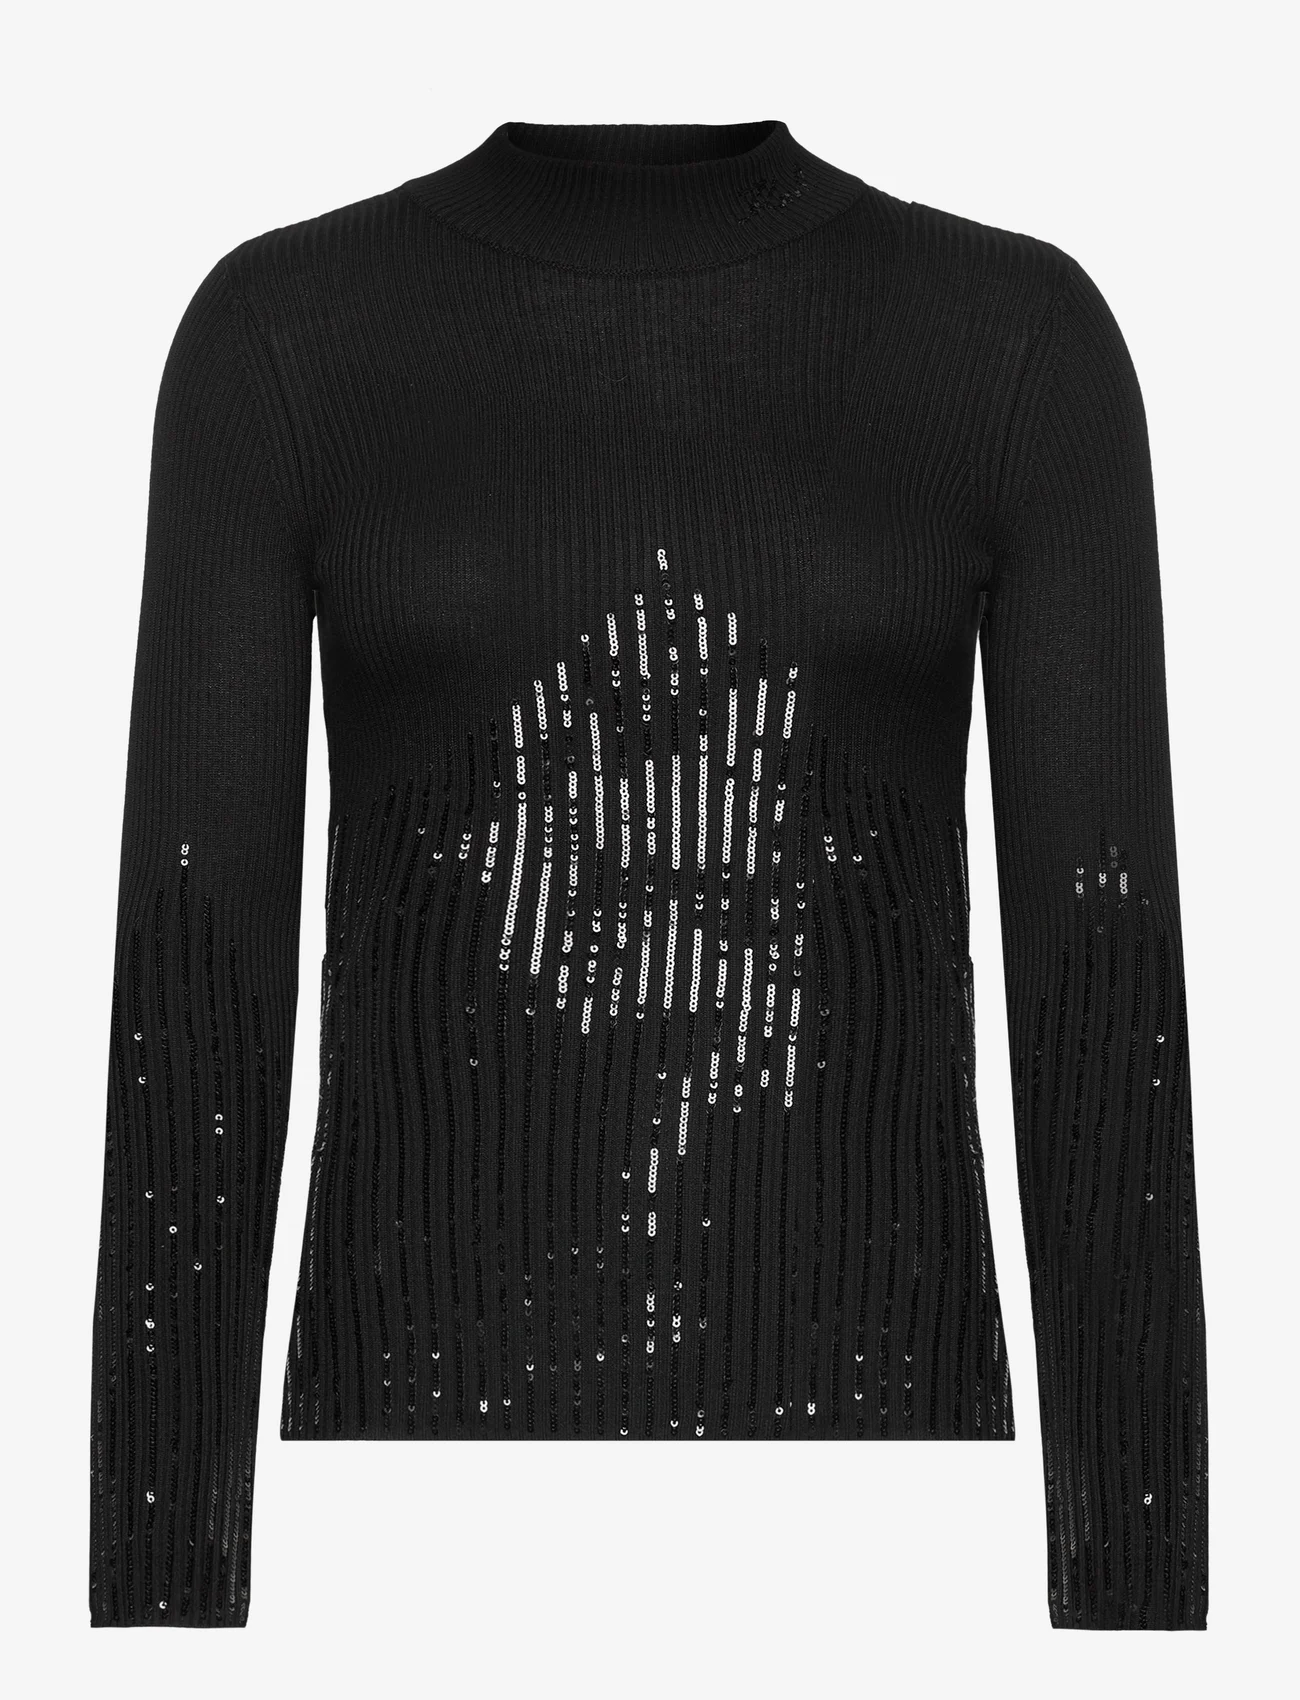 Karl Lagerfeld - lslv mockneck knit - strikkegensere - black - 0